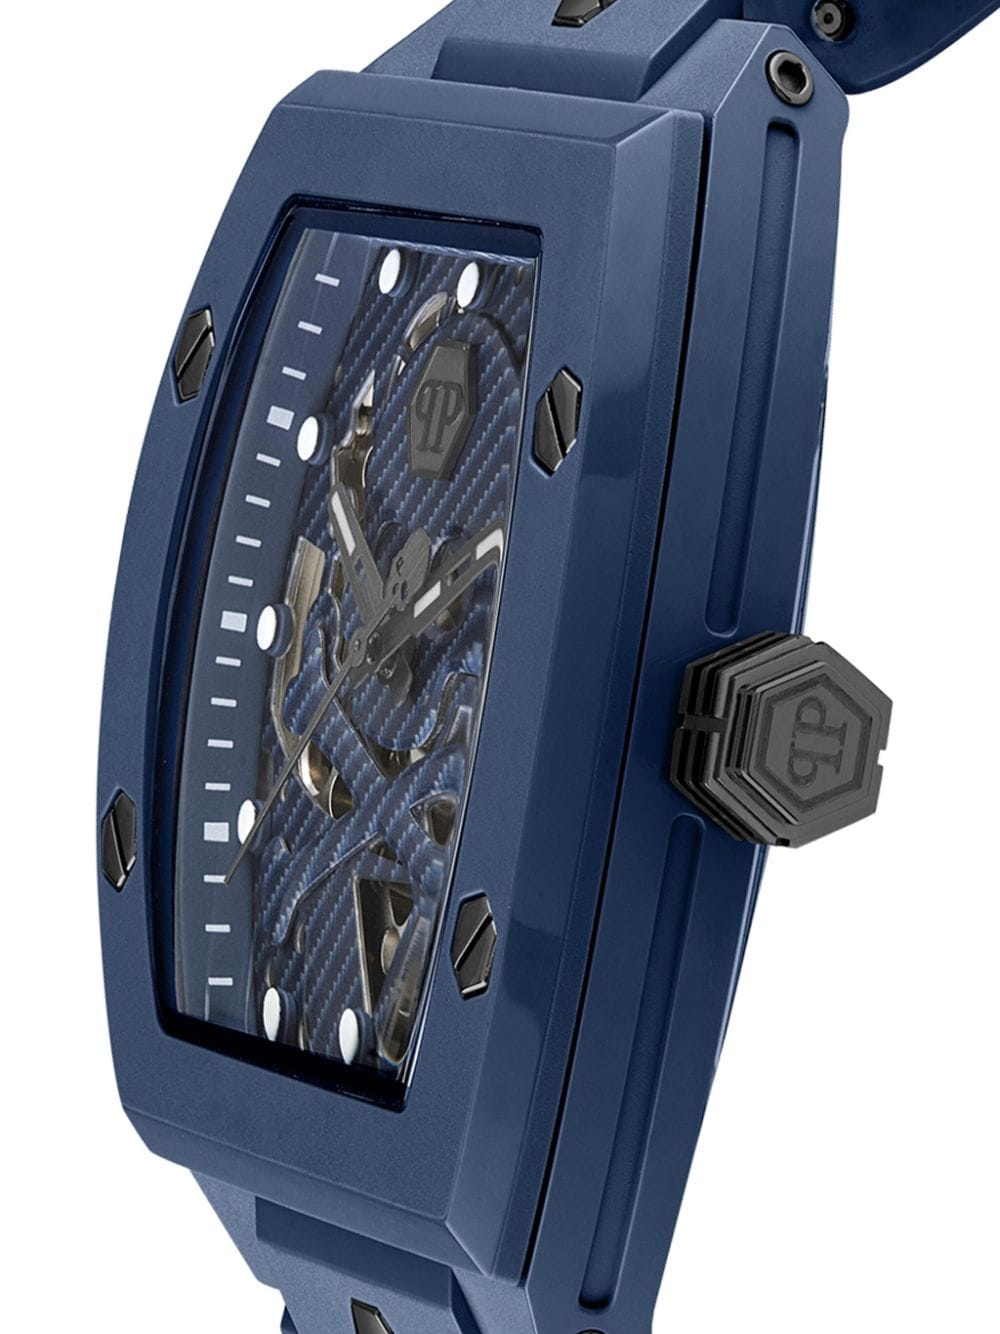 Philipp Plein The $kull Ecoceramic horloge - Blauw